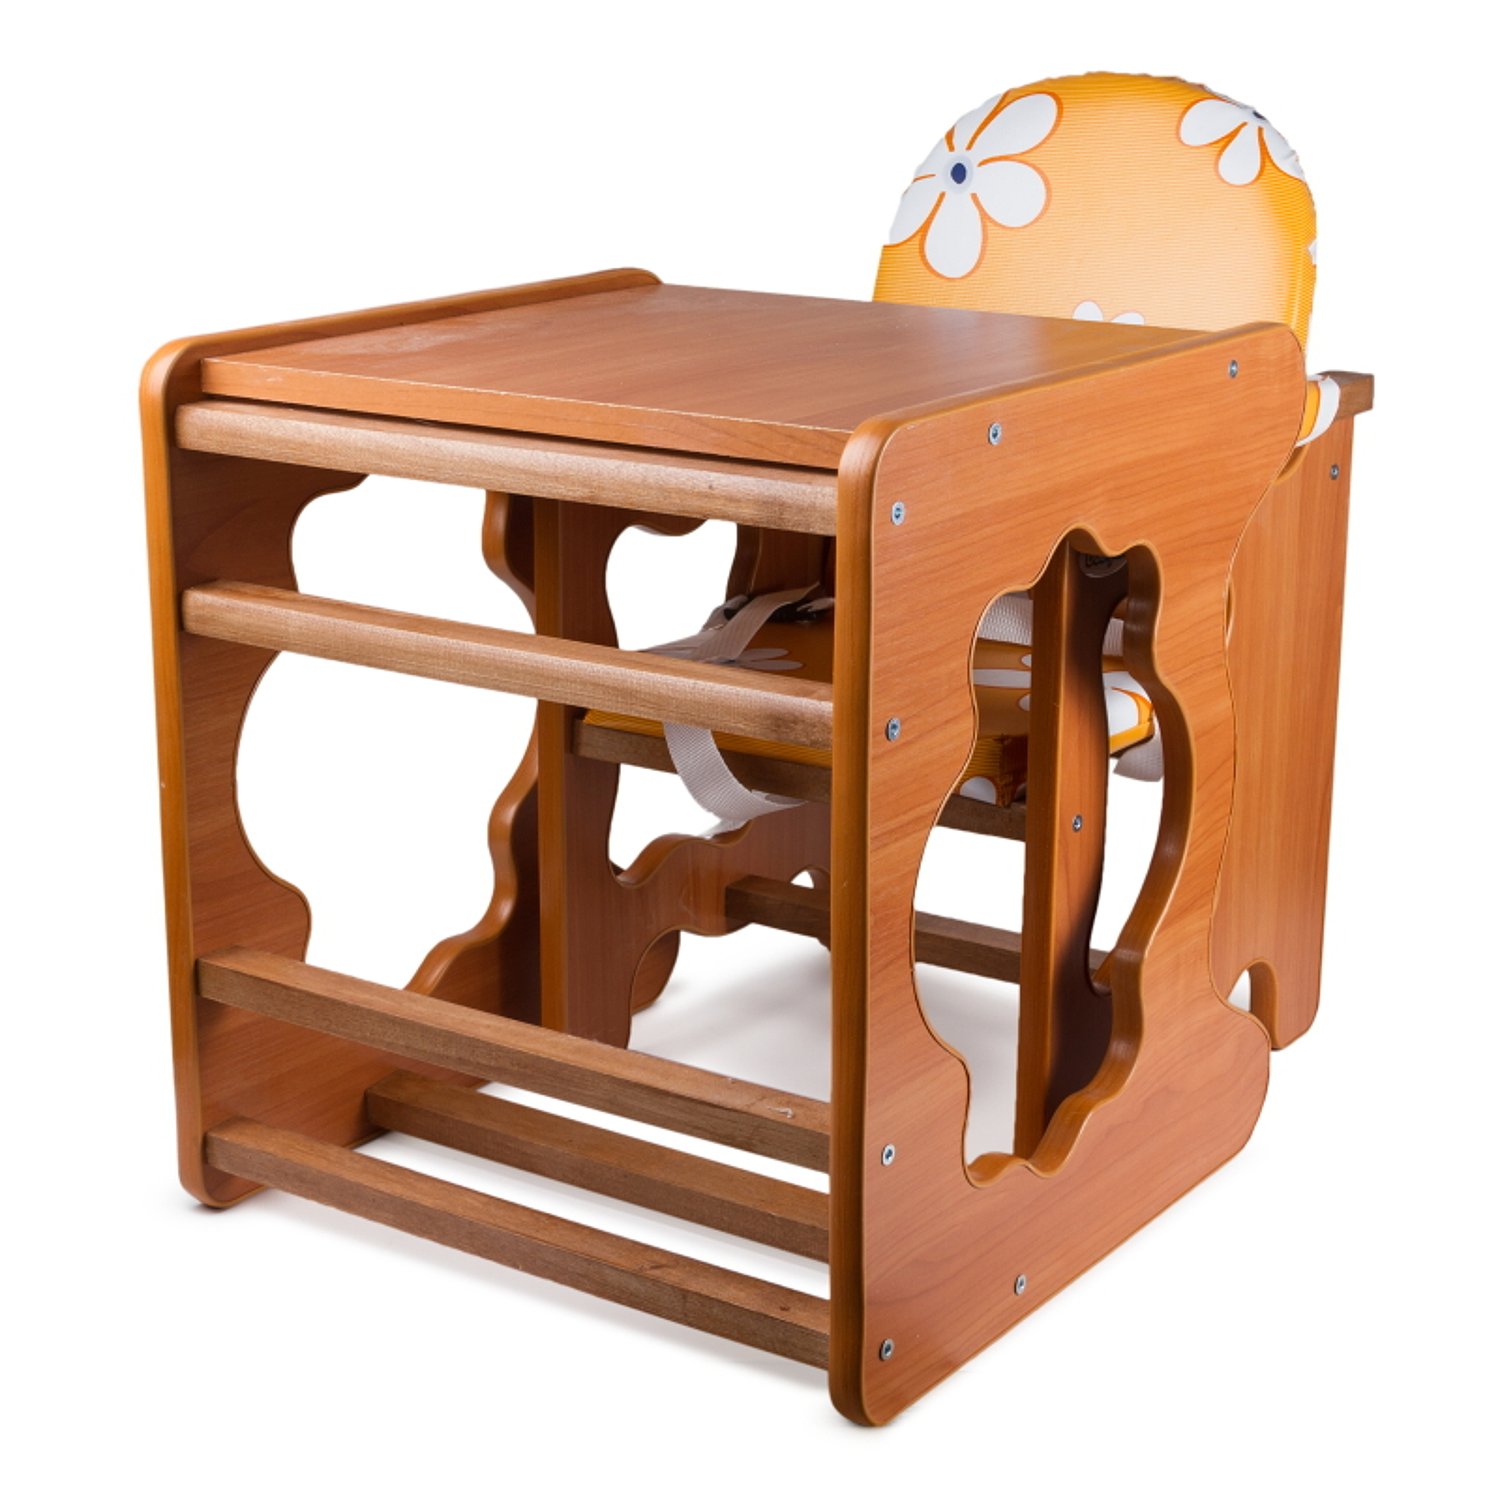 Детский столик и стульчик хохлома